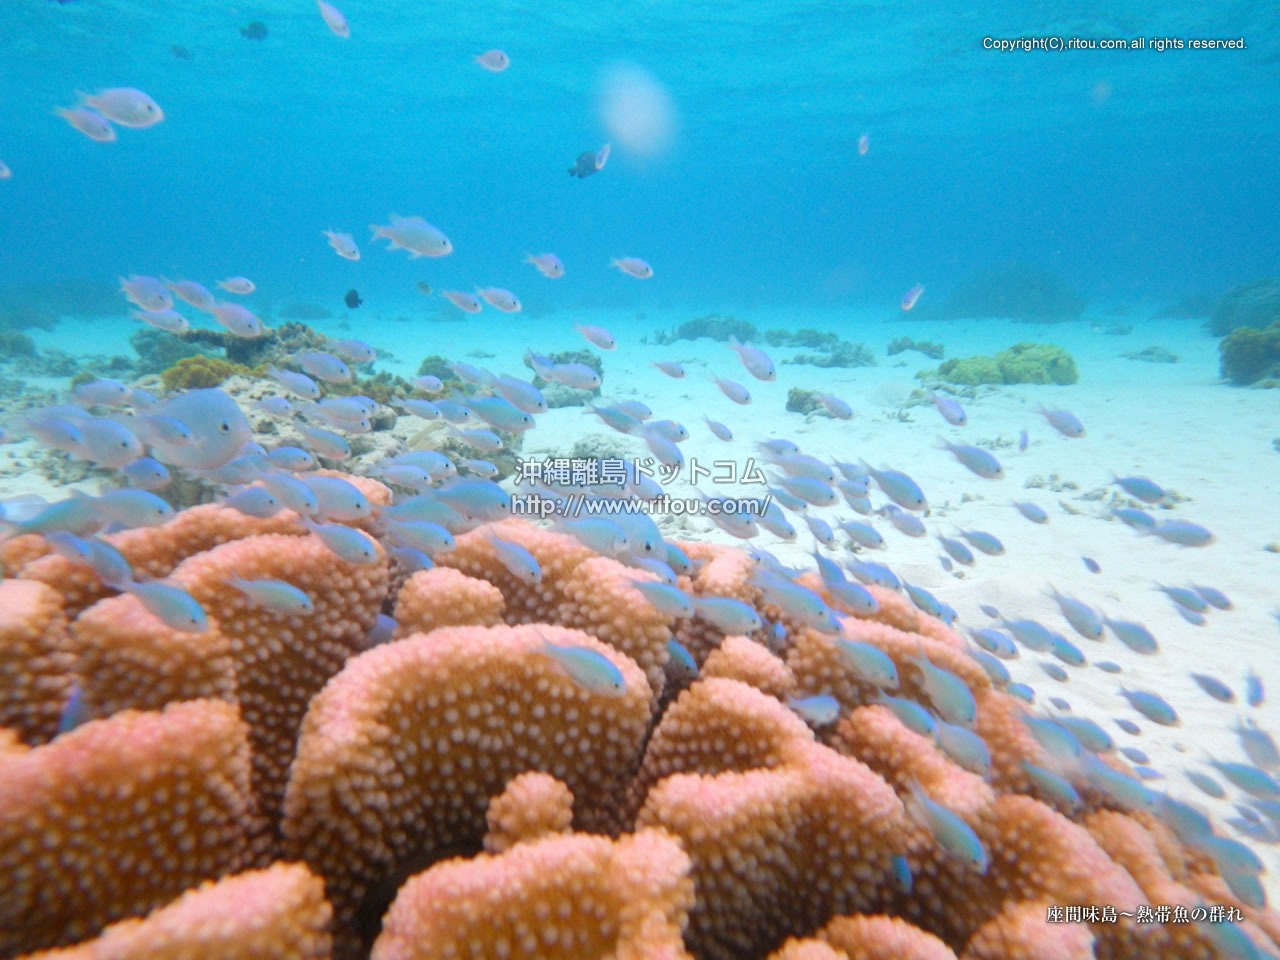 座間味島 熱帯魚の群れ 沖縄離島の壁紙